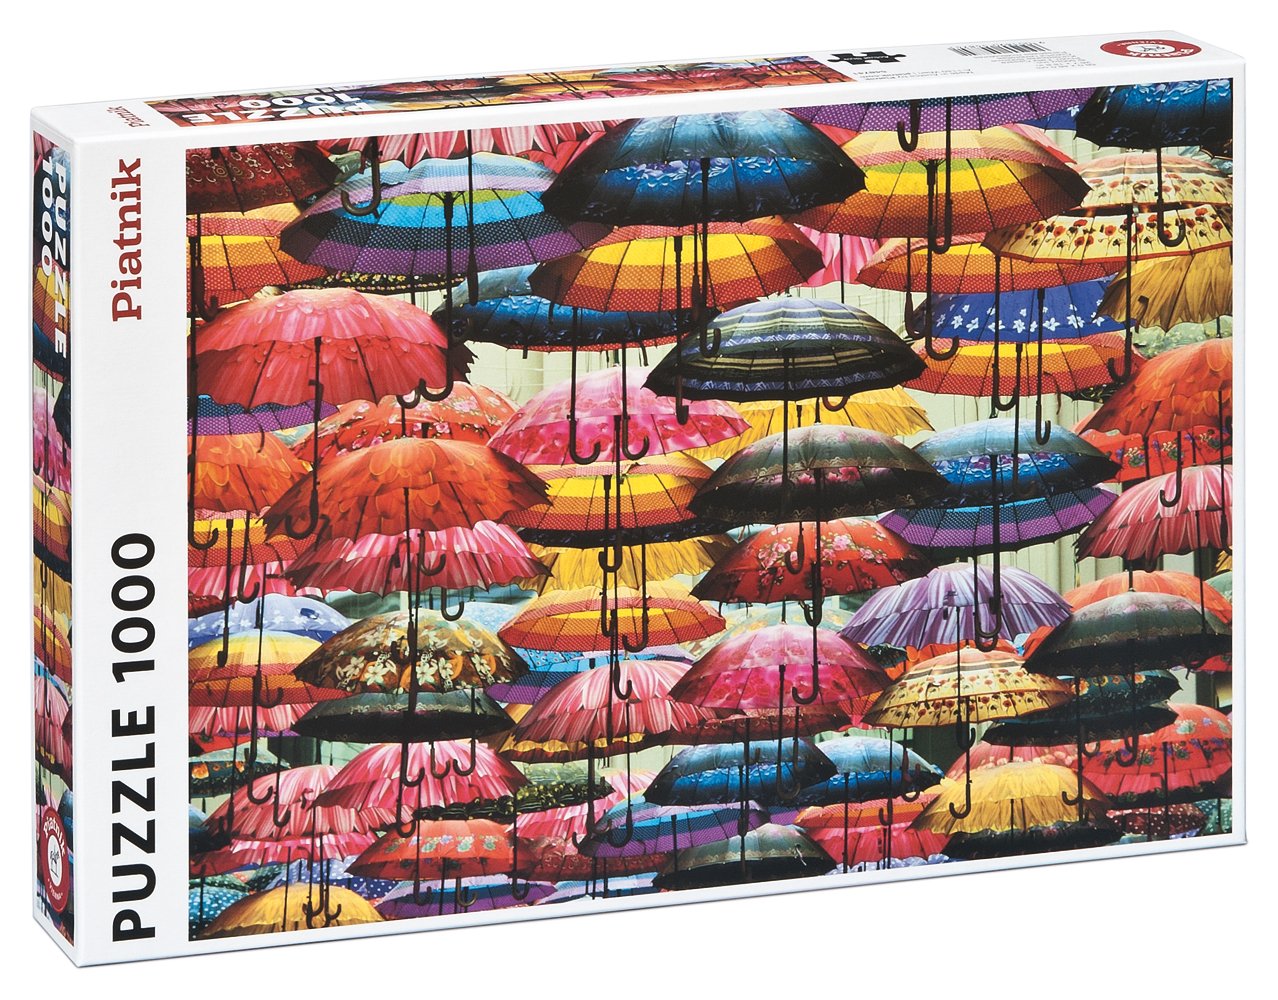 Piatnik Puzzle Deštníky 1000 dílků